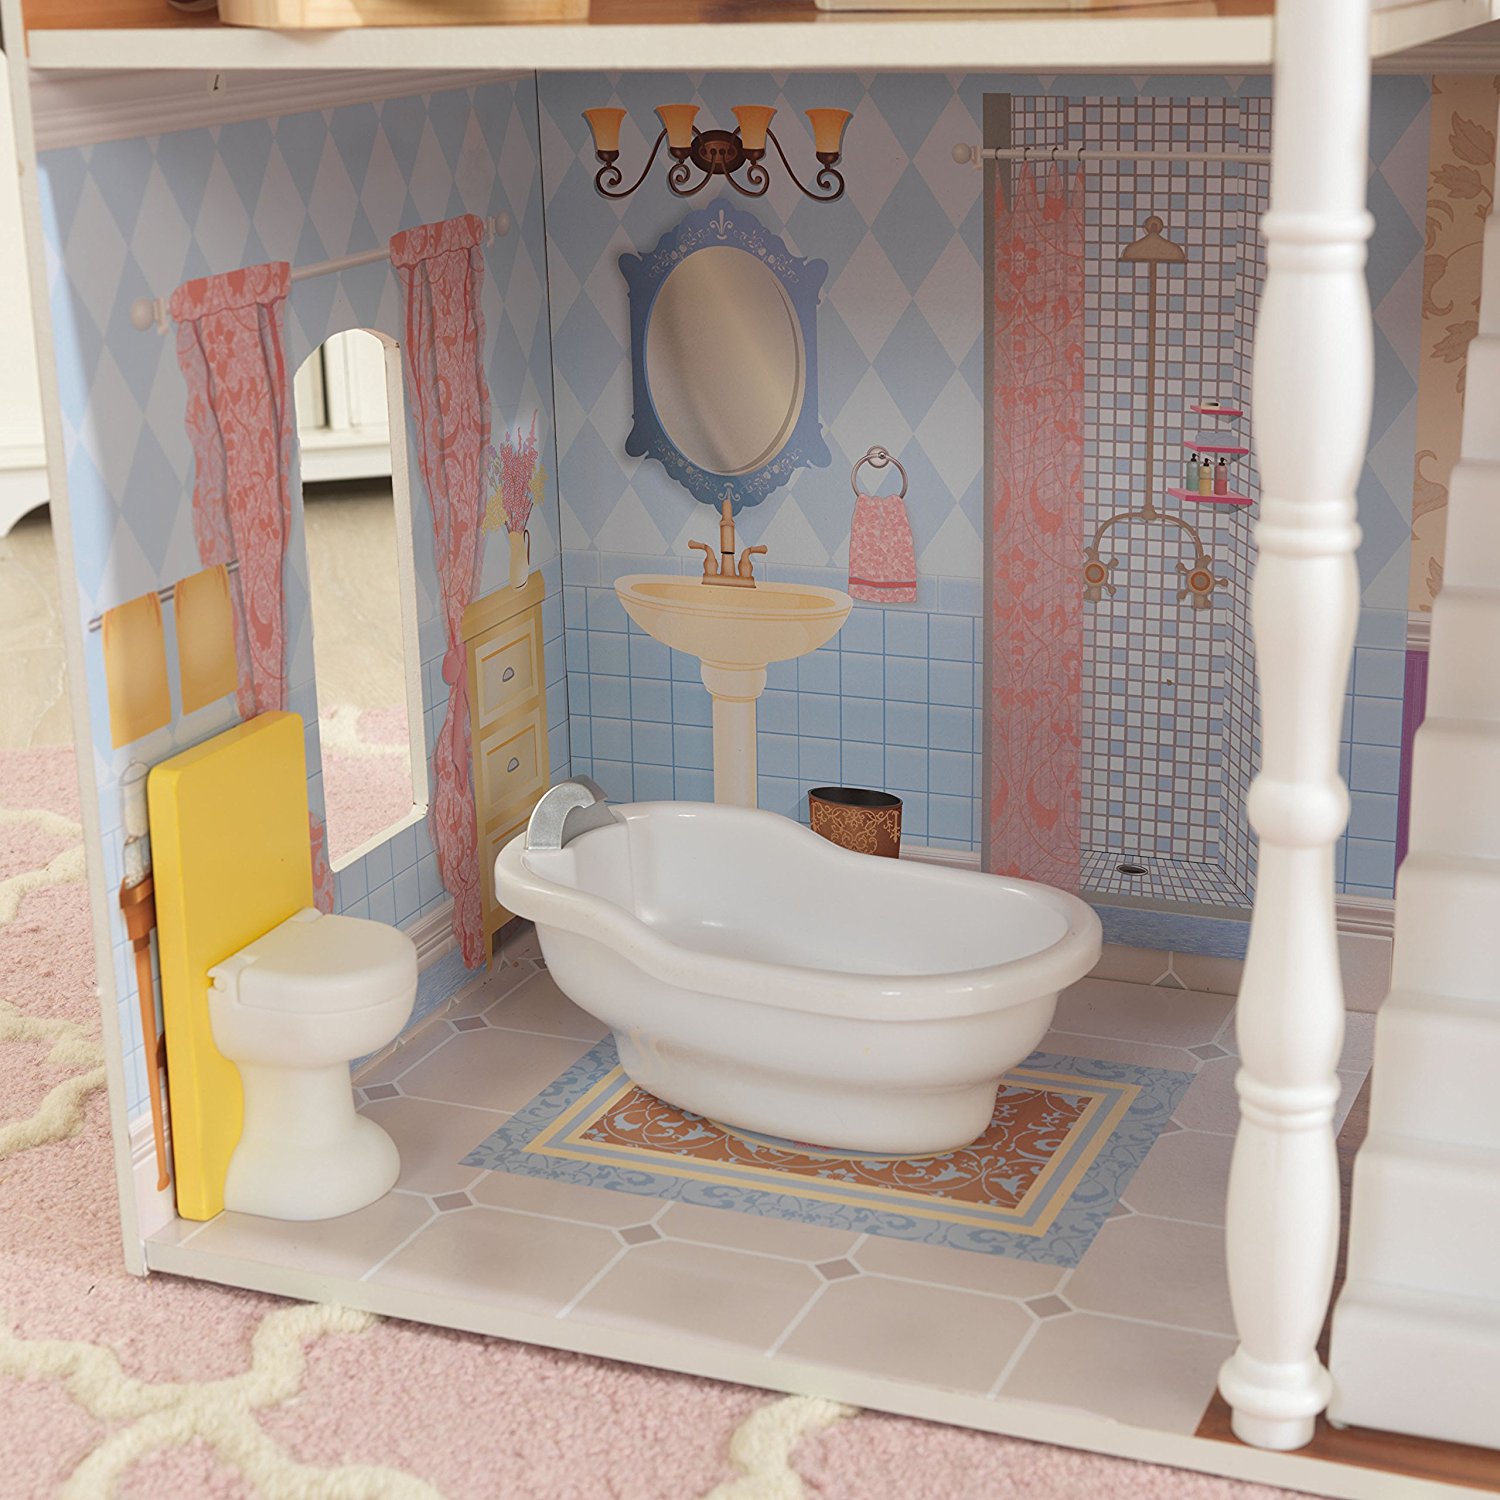 Кукольный домик для Барби – Саванна, с мебелью, 14 элементов  